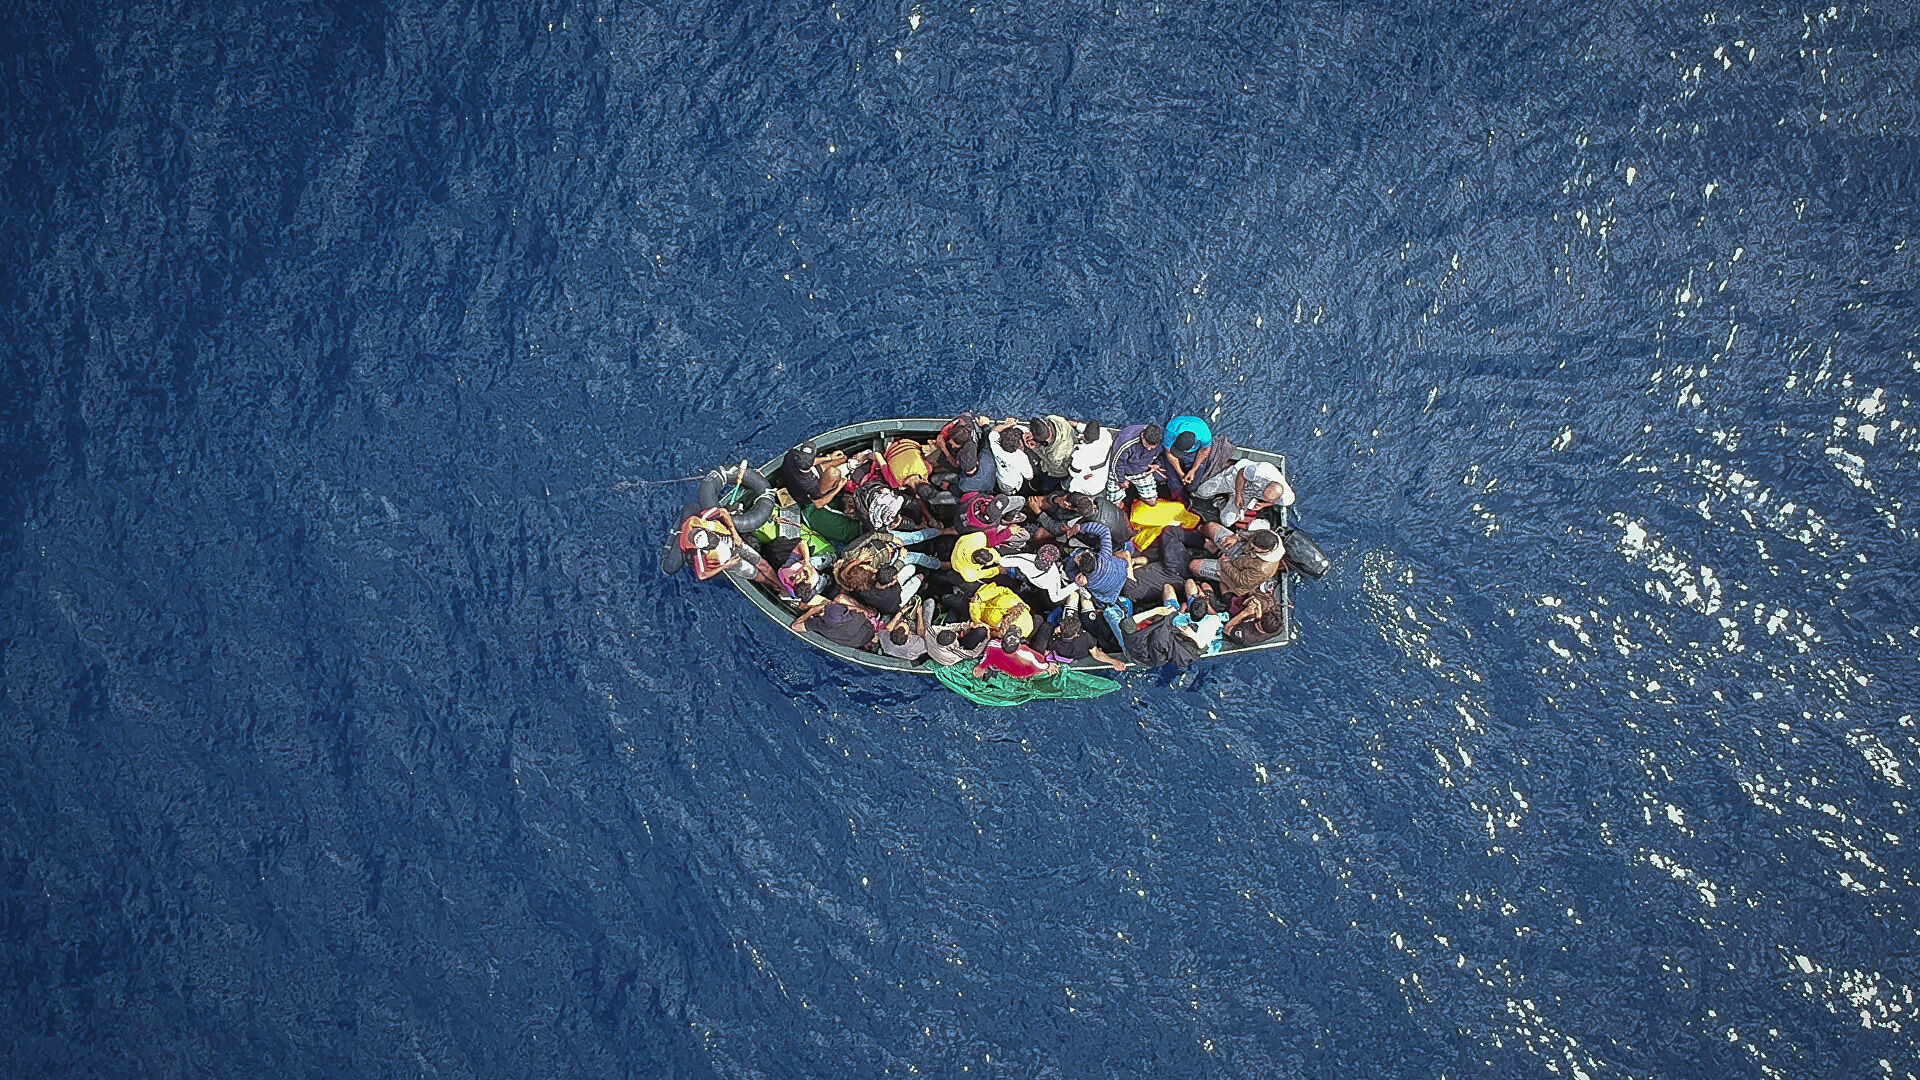 البحرية المغربية تنقذ 120 مهاجرا غير نظامي عرض البحر